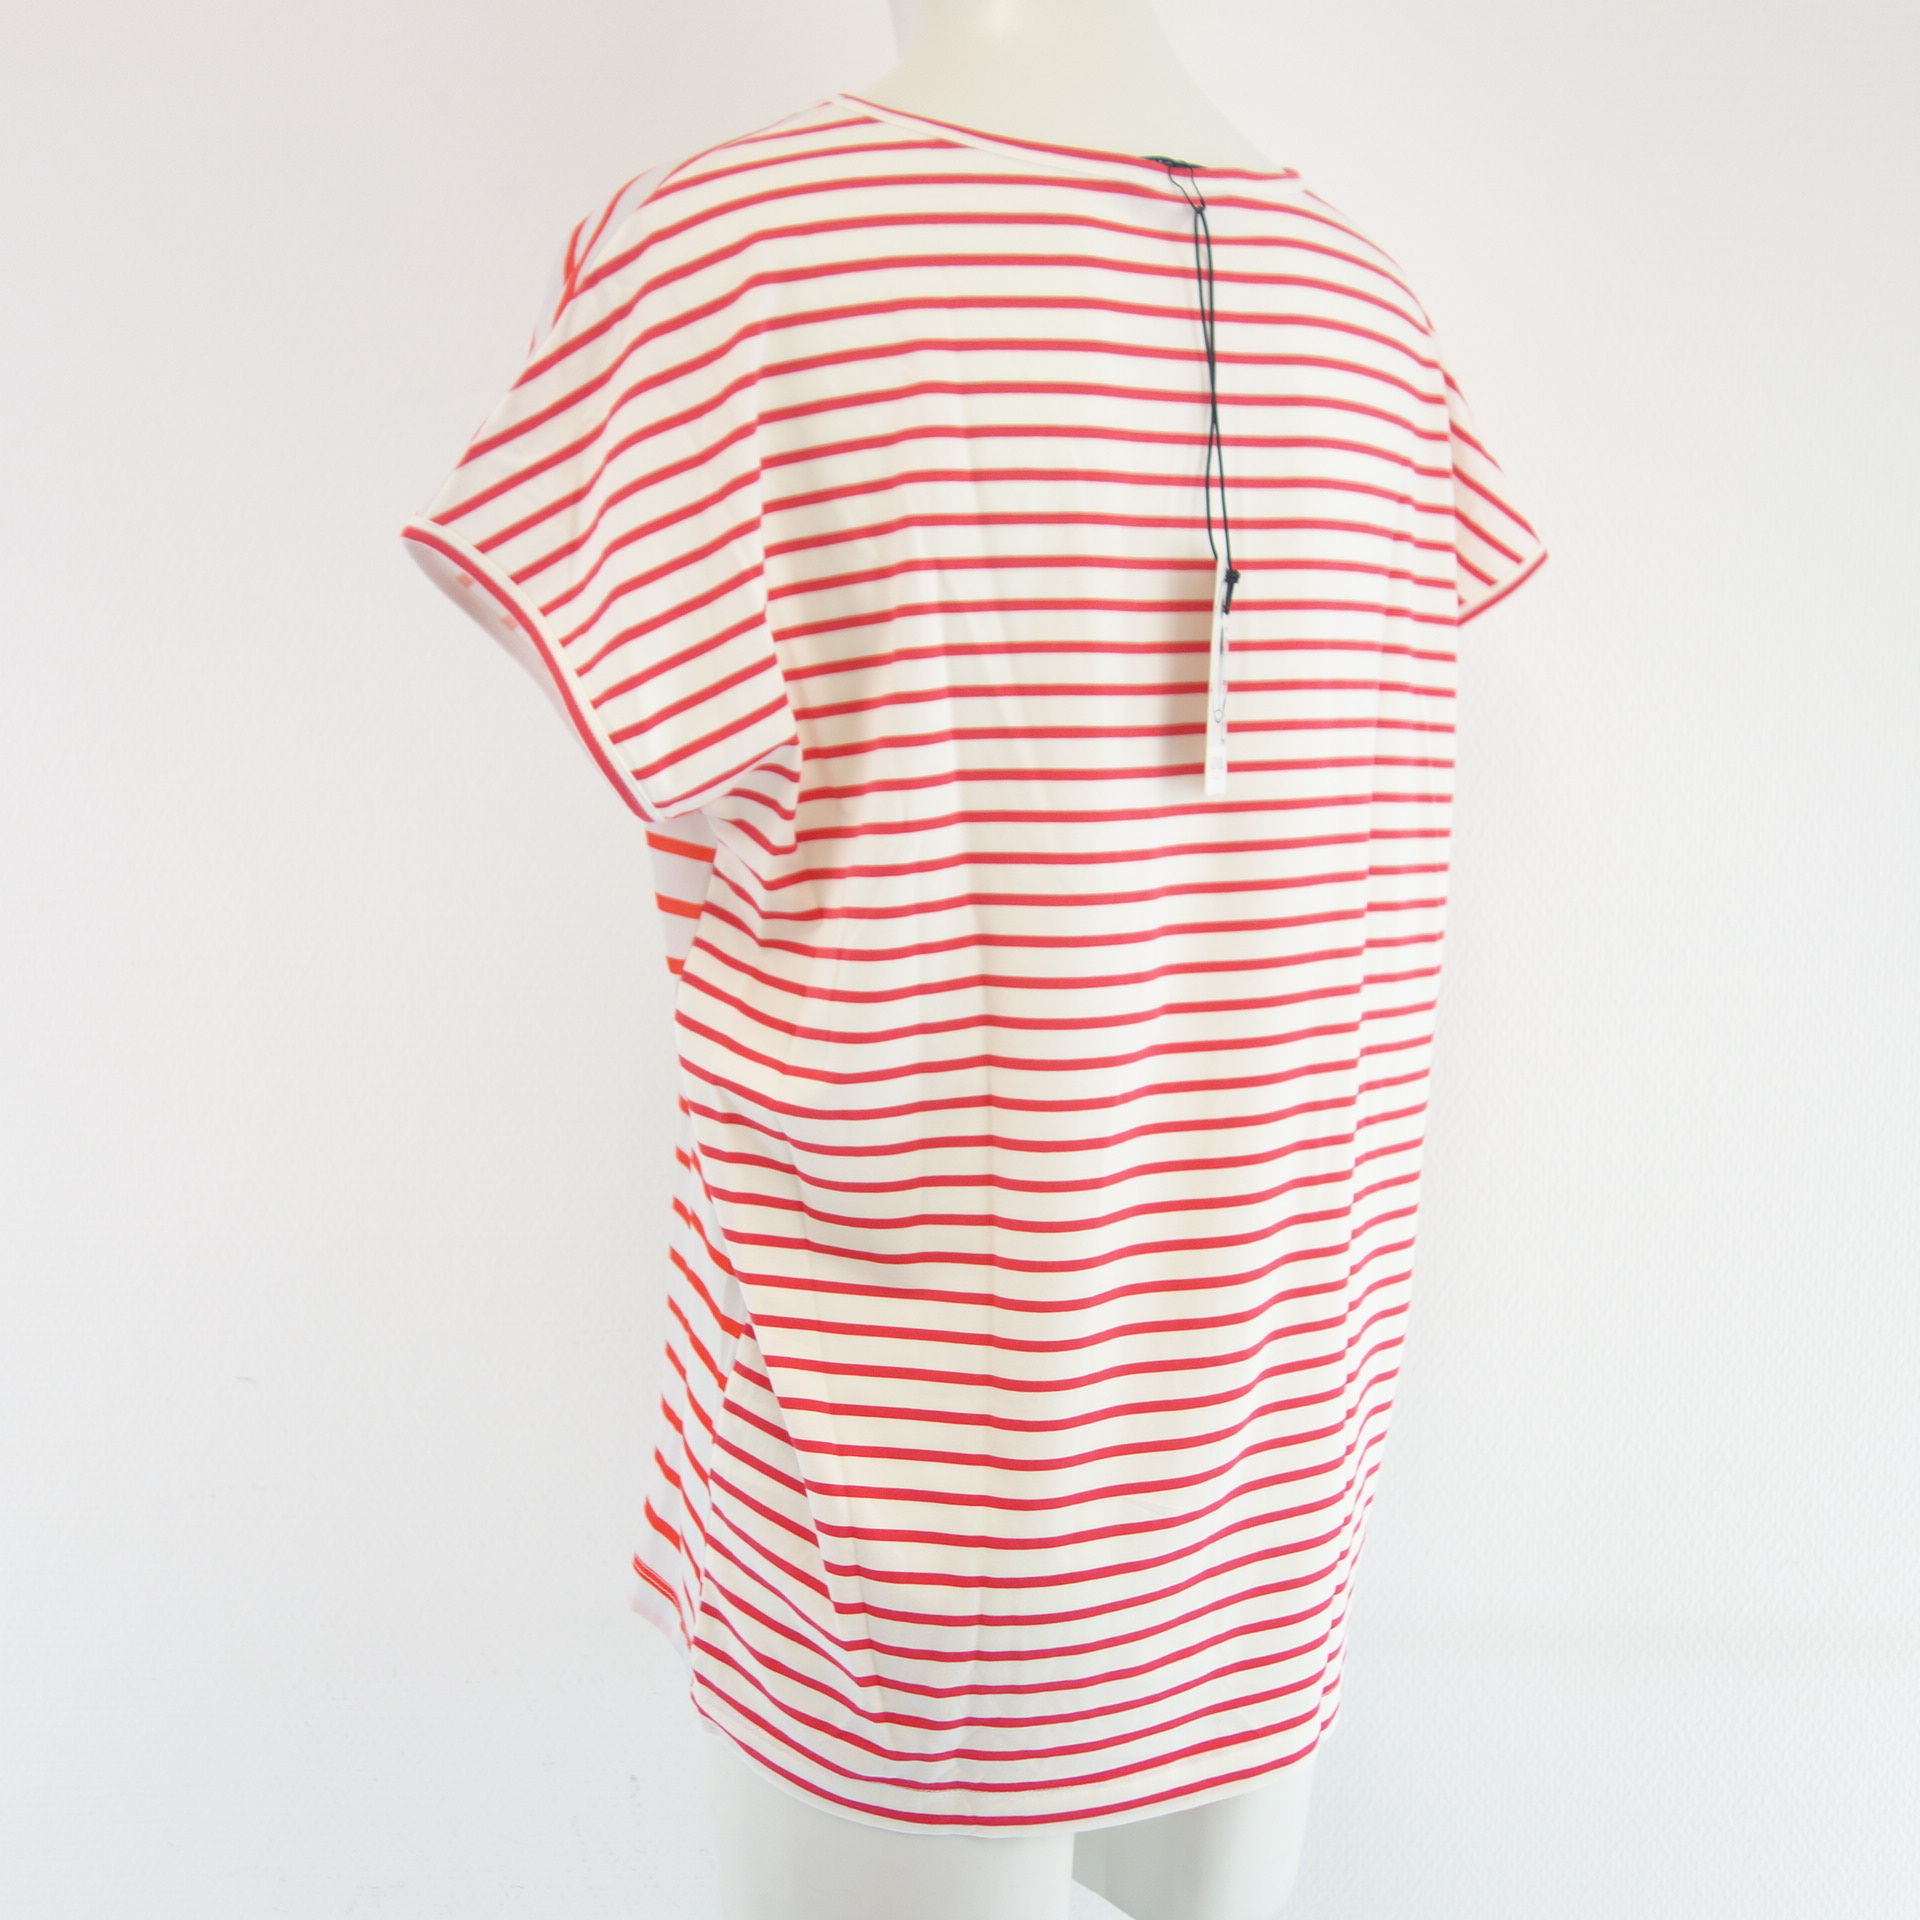 CAT NOIR Paris Damen T Shirt T-Shirt Oberteil Rot Weiß Gestreift Print